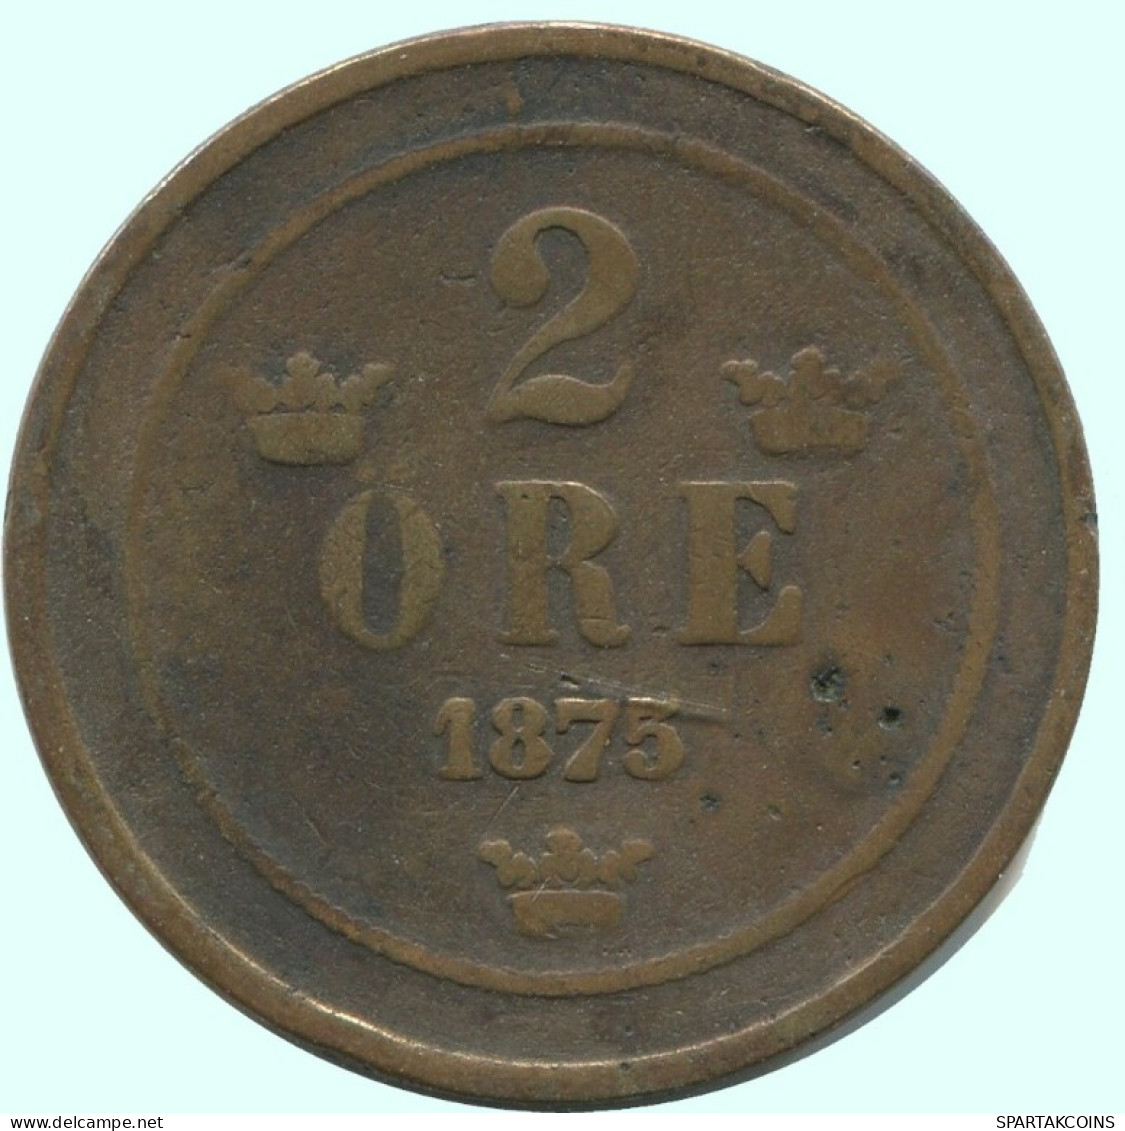 2 ORE 1875 SCHWEDEN SWEDEN Münze #AC867.2.D.A - Sweden